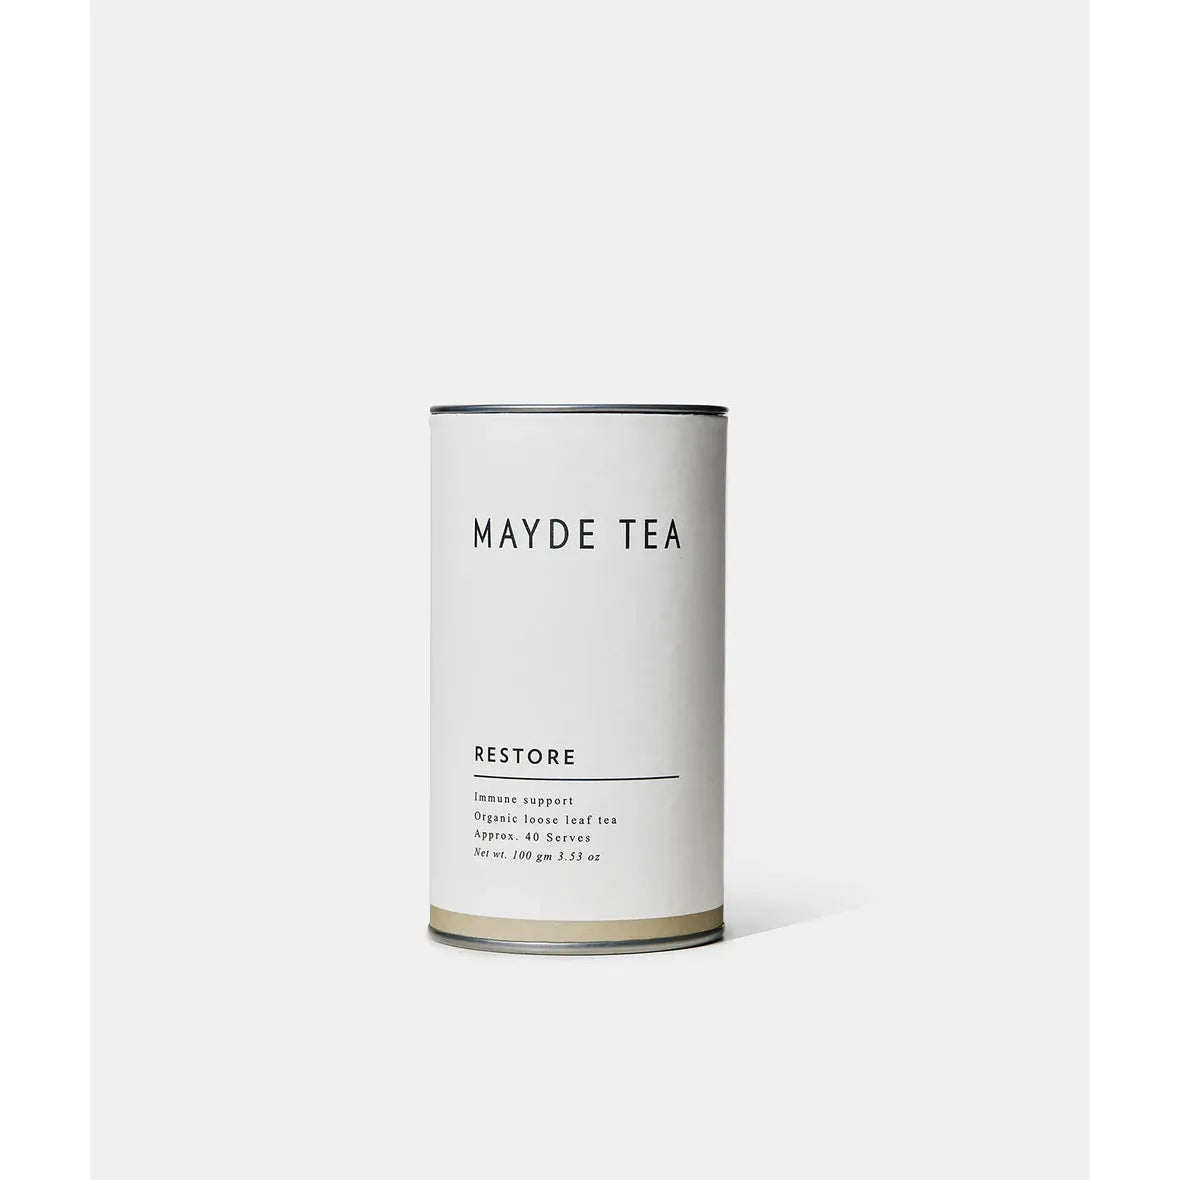 Mayde Tea Restore 40 Serves